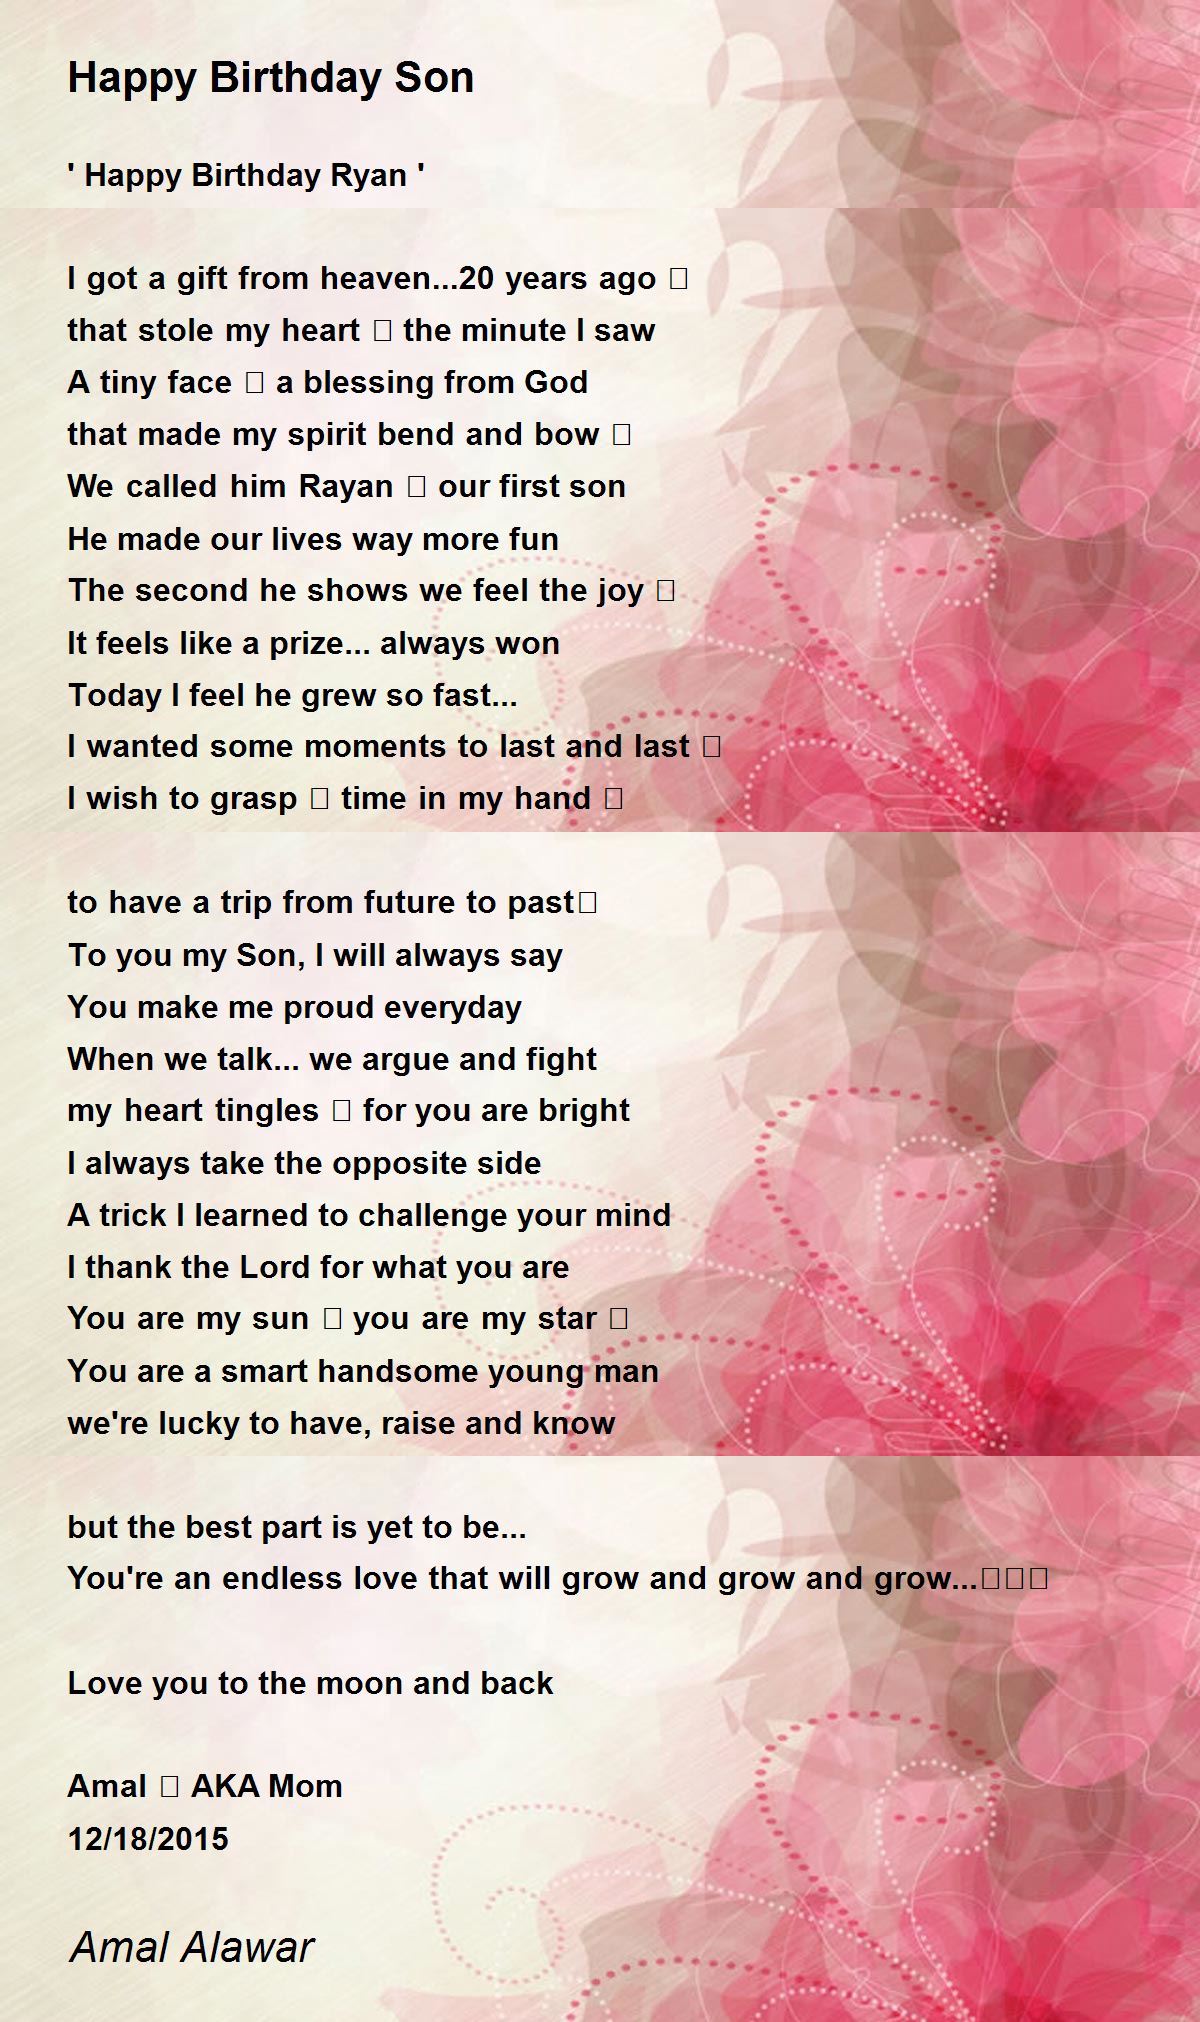 Happy Birthday Son - Happy Birthday Son Poem by Amal Alawar